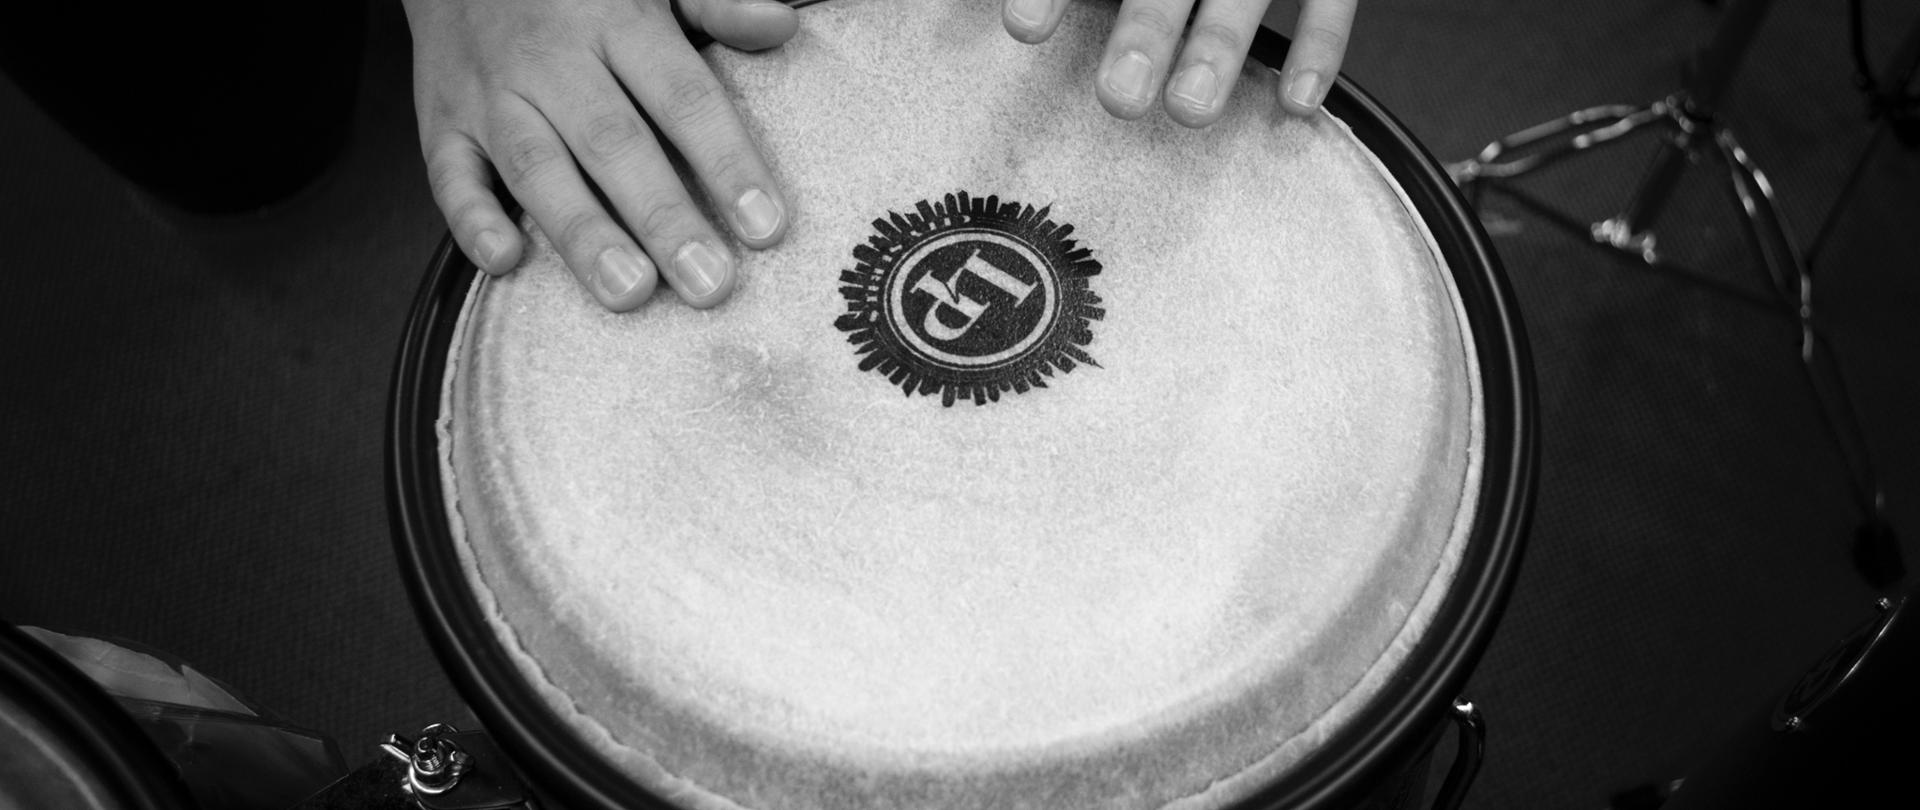 Zdjęcie przedstawia instrument perkusyjny - bęben w kolorze szarym z logo LP w kolorze czarnym , nad instrumentem znajdują się ręce osoby grającej na bębnie dookoła bębna widać zarys instrumentów perkusyjnych na ciemnoszarym tle